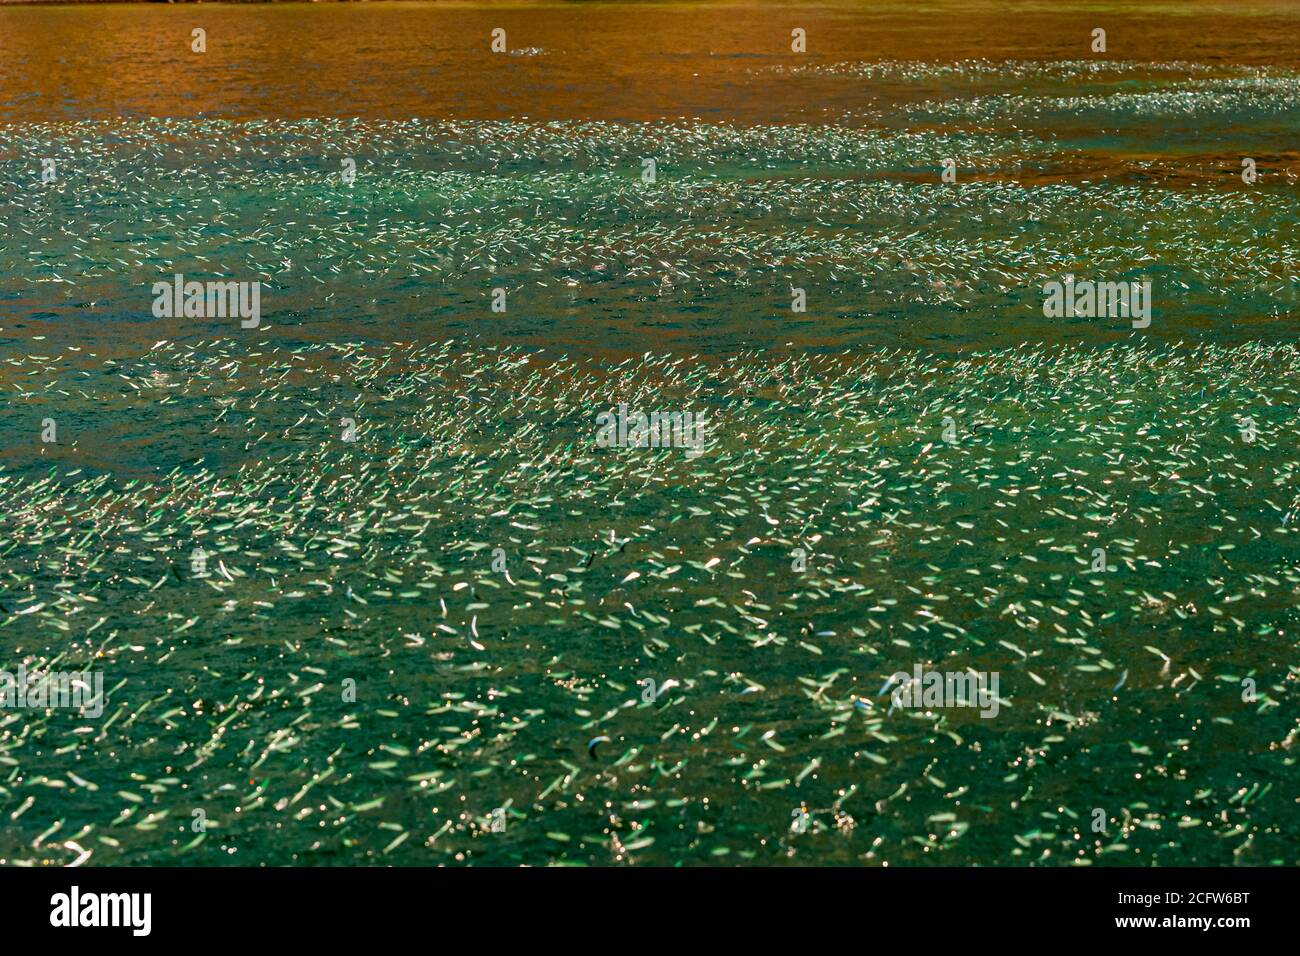 Le acciughe saltano fuori dall'acqua in massa, indicando la presenza di pesci predatori Foto Stock